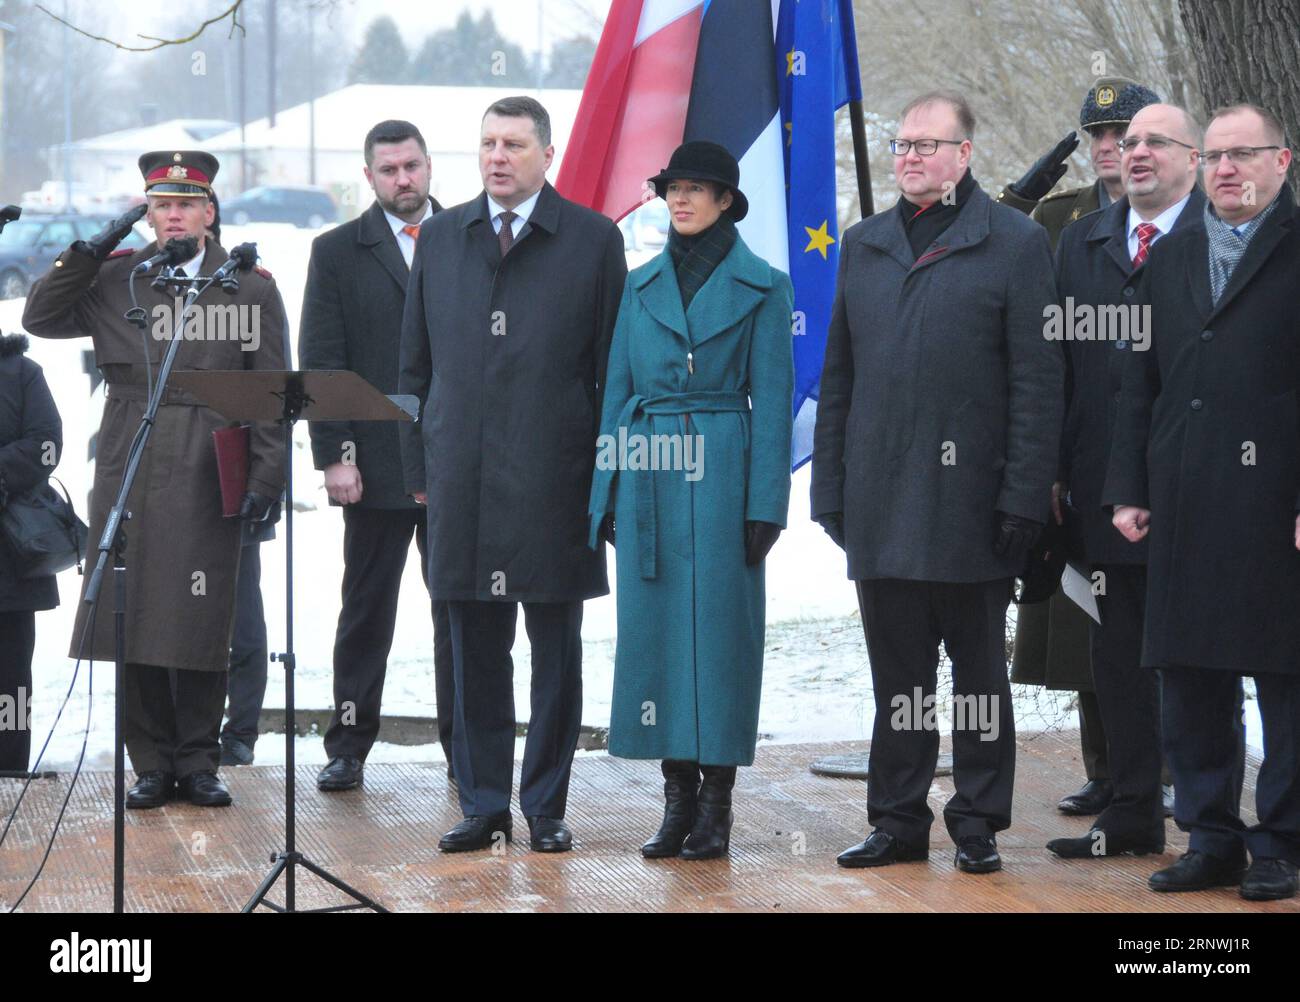 (171221) -- VALKA/VALGA, 21 dicembre 2017 -- il presidente lettone Raimonds Vejonis (3rd L) e il presidente estone Kersti Kaljulaid (4th L) assistono alla cerimonia di celebrazione di un ex valico di frontiera tra Valka in Lettonia e Valga in Estonia, il 21 dicembre 2017. I presidenti dei vicini baltici Lettonia ed Estonia si sono incontrati giovedì per celebrare il primo decennio dei loro paesi nell'area Schengen. ) LETTONIA-ESTONIA-FRONTIERA-SPAZIO SCHENGEN-DECIMO ANNIVERSARIO JANIS PUBLICATIONXNOTXINXCHN Foto Stock